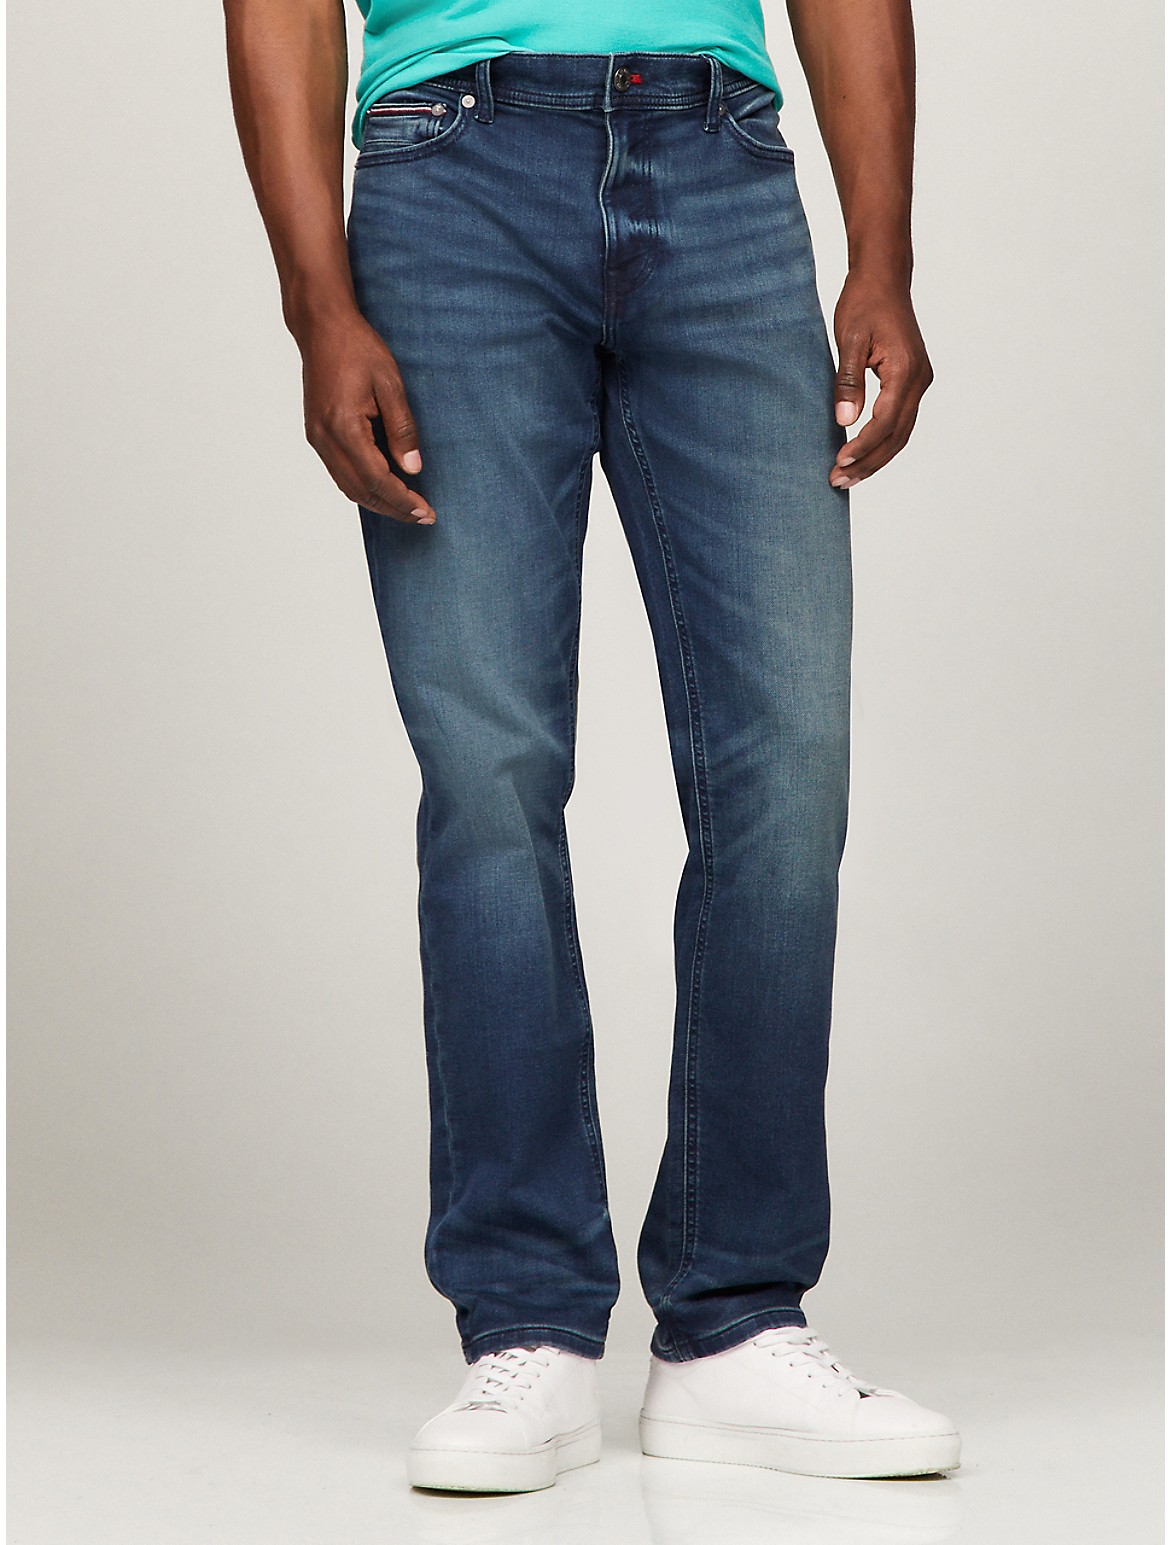 Tommy Hilfiger Men's Straight Fit Dark Blue Wash Jean